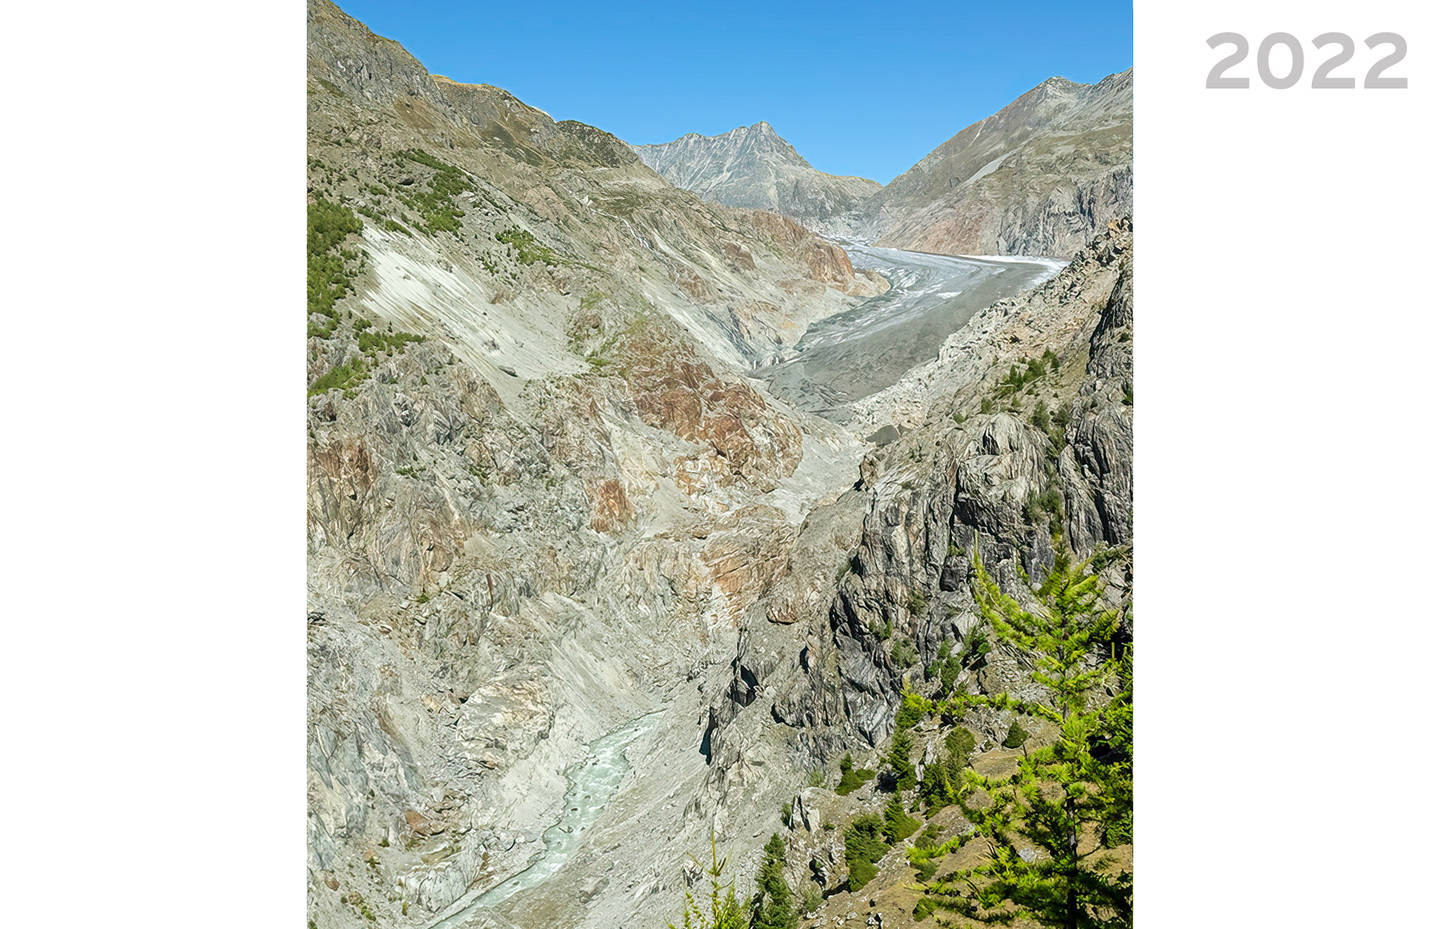 Aletschgletscher im Jahr 2022 vom Aletschkopf aus fotografiert